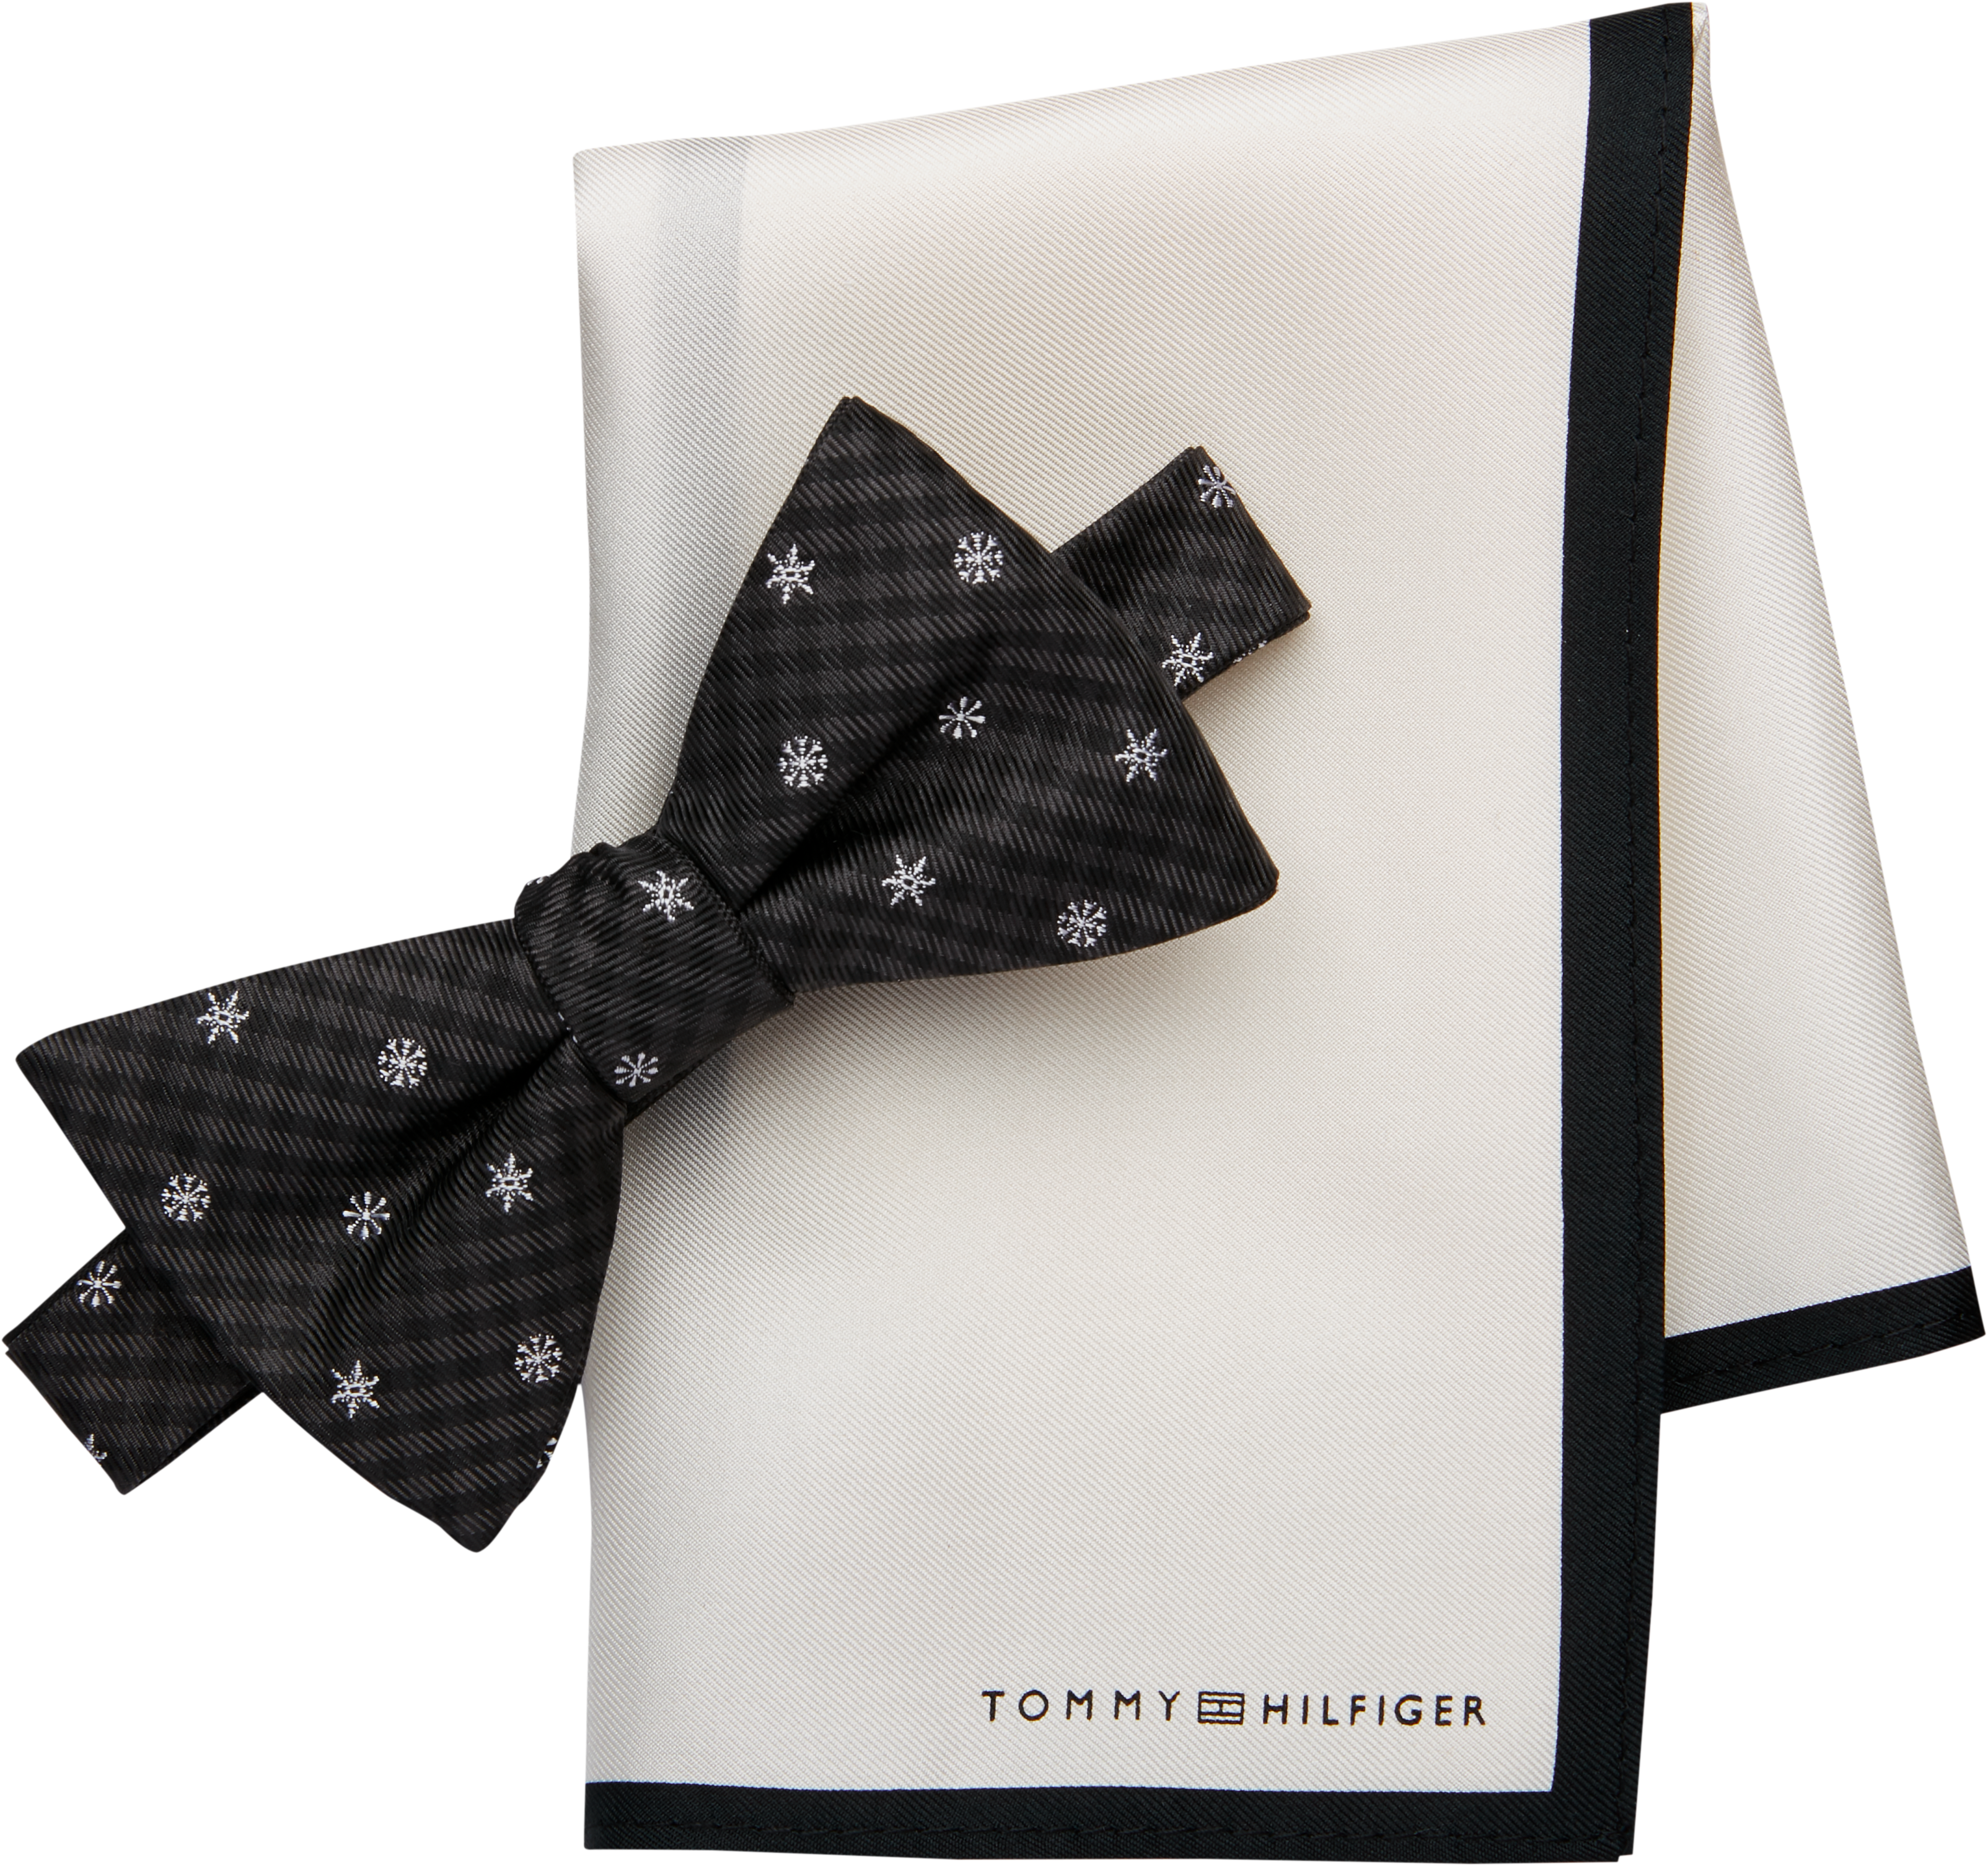 tommy hilfiger black tie